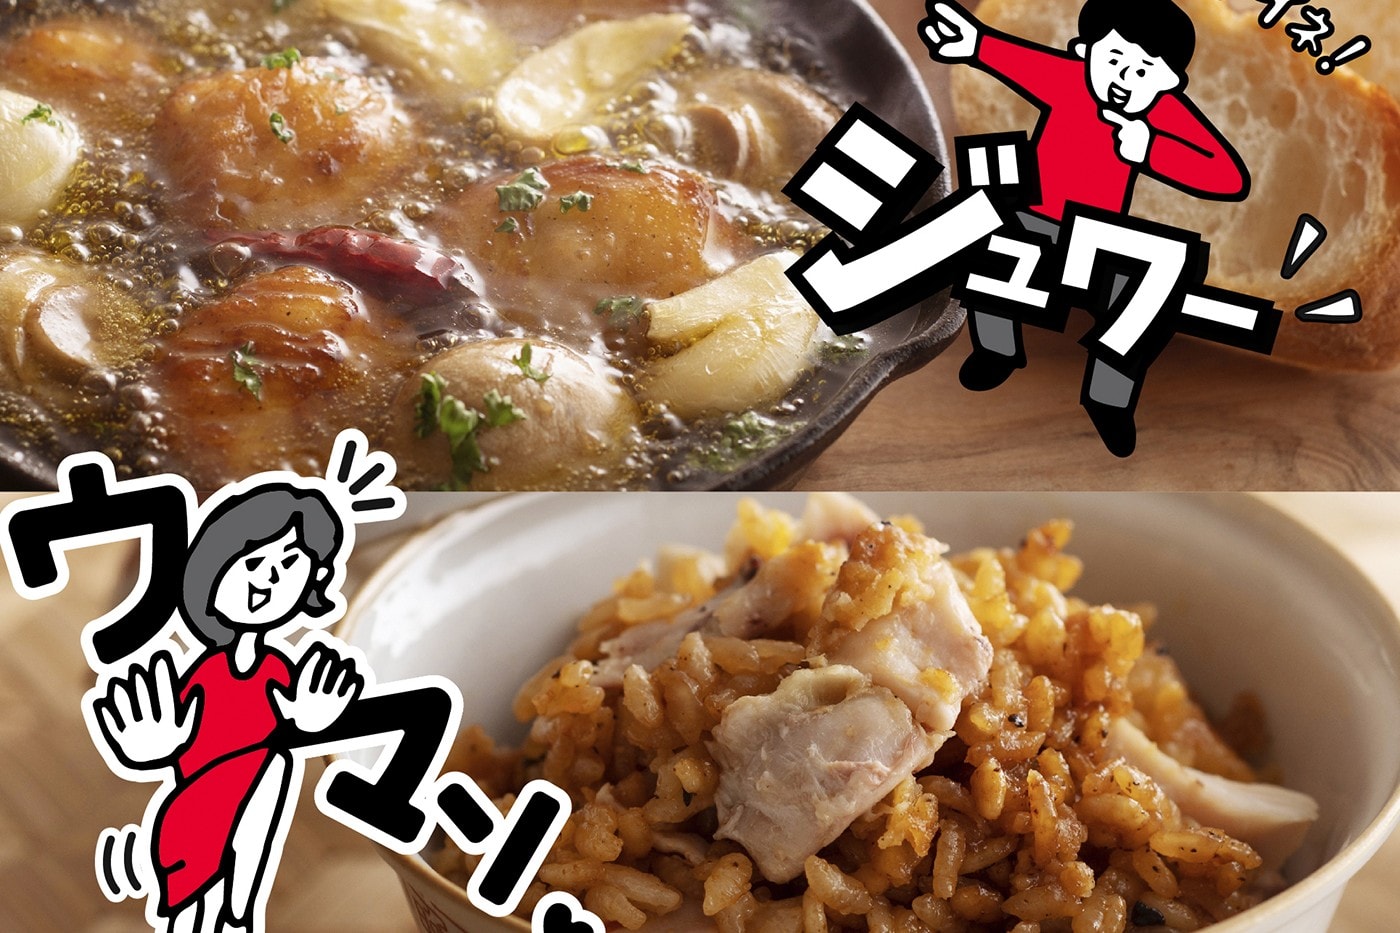 日本 KFC 發佈全新「濃白雞骨高湯蕎麥麵」、「大蒜油煎炒雞」等獨家食譜